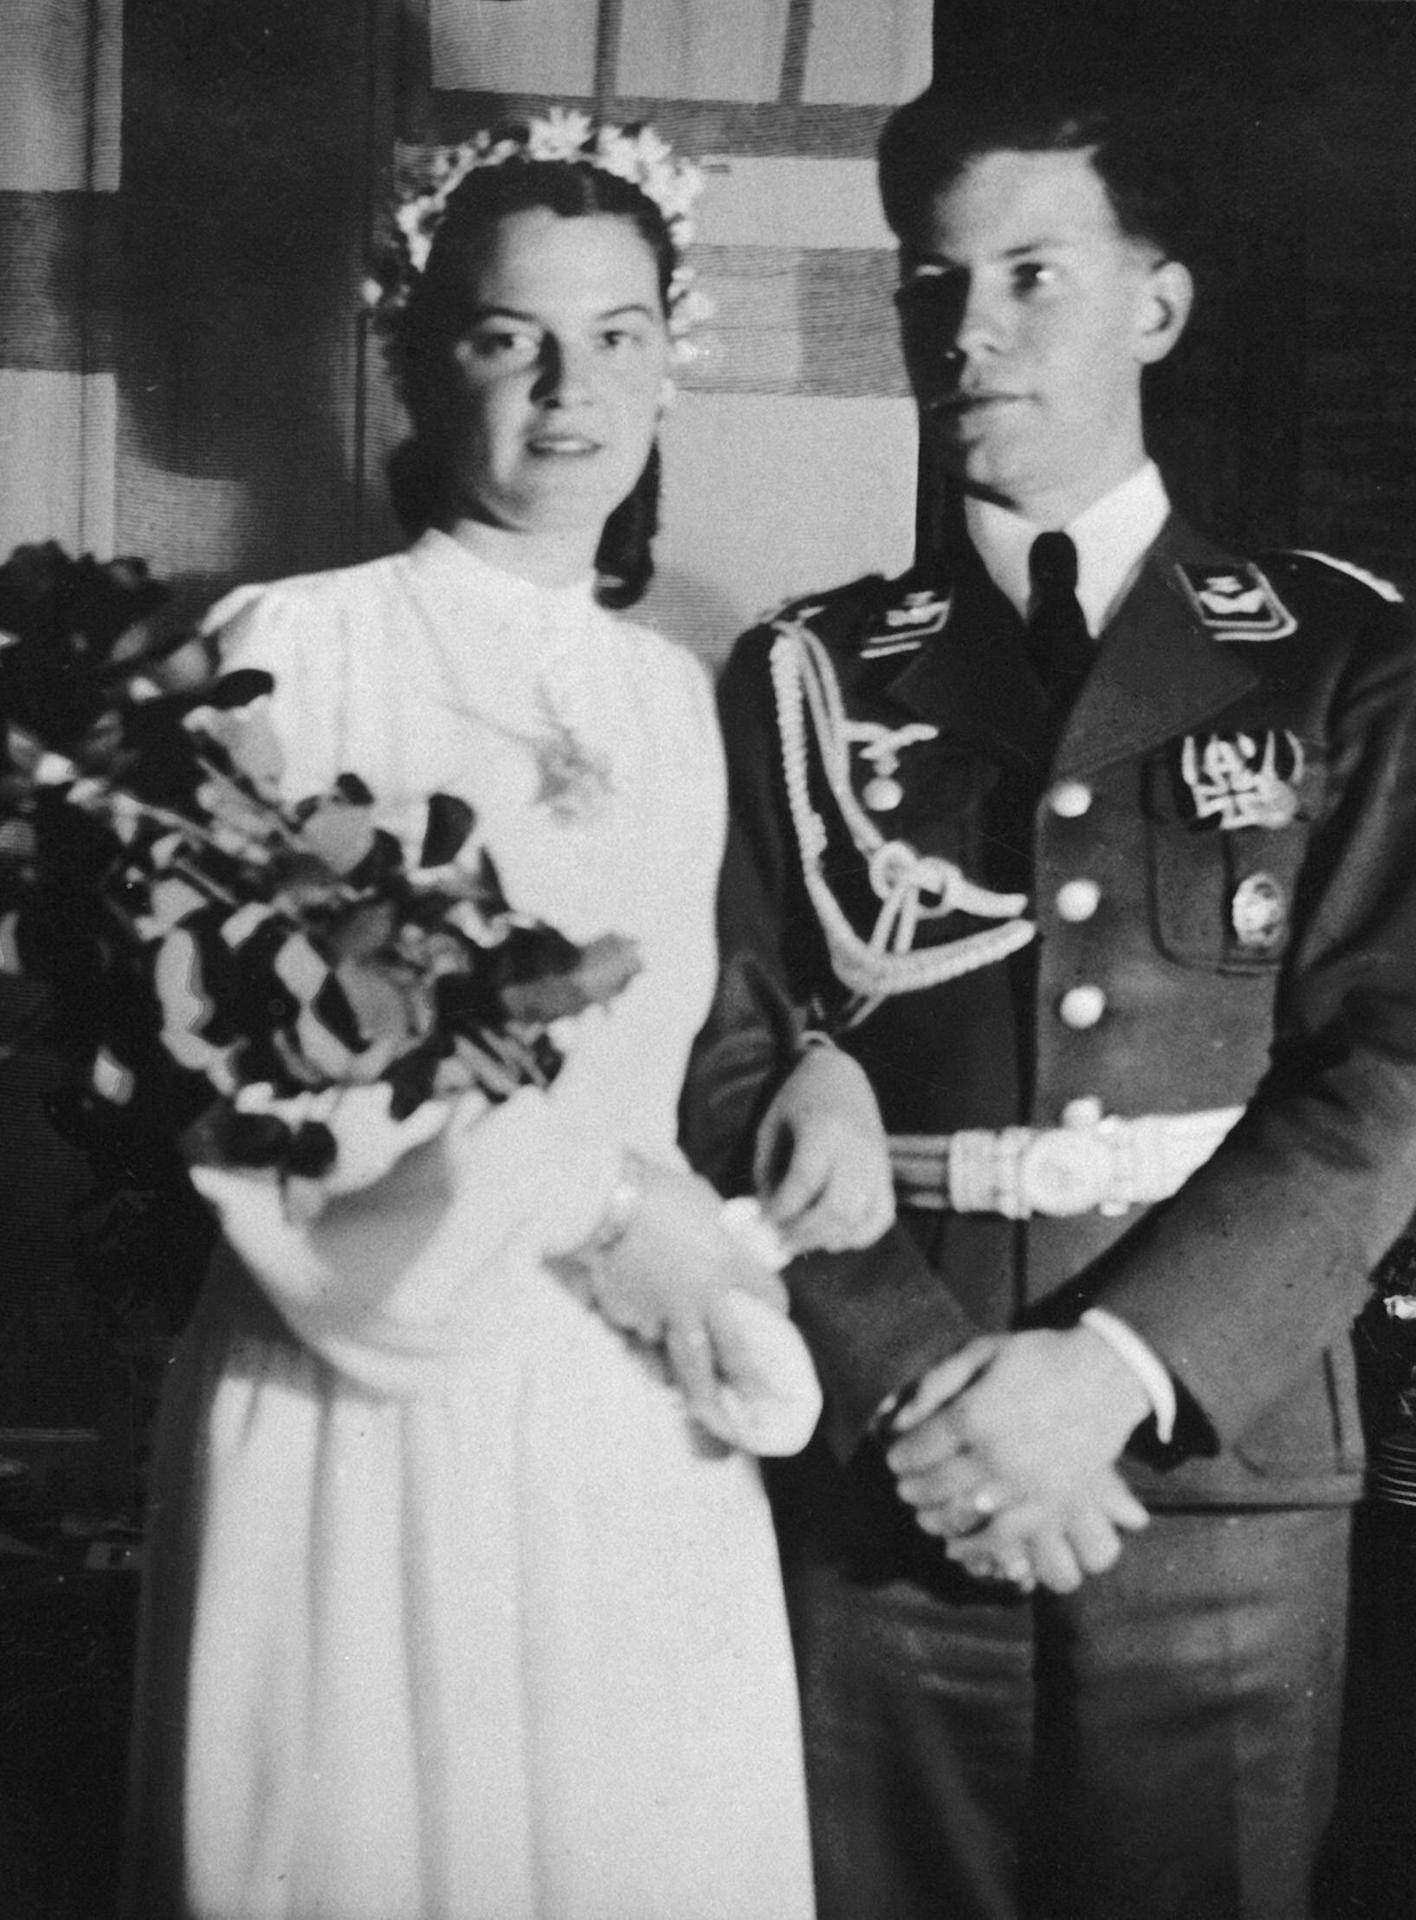 Nach der Rückkehr von der Ostfront 1942, verlobten sich Helmut Schmidt und Loki Glaser und heirateten am 1. Juli. Am 26. Juni 1944 wird der Sohn Helmut Walter geboren. Er stirbt am 19. Februar 1945. Helmut Schmidt erfährt davon in einem Brief.